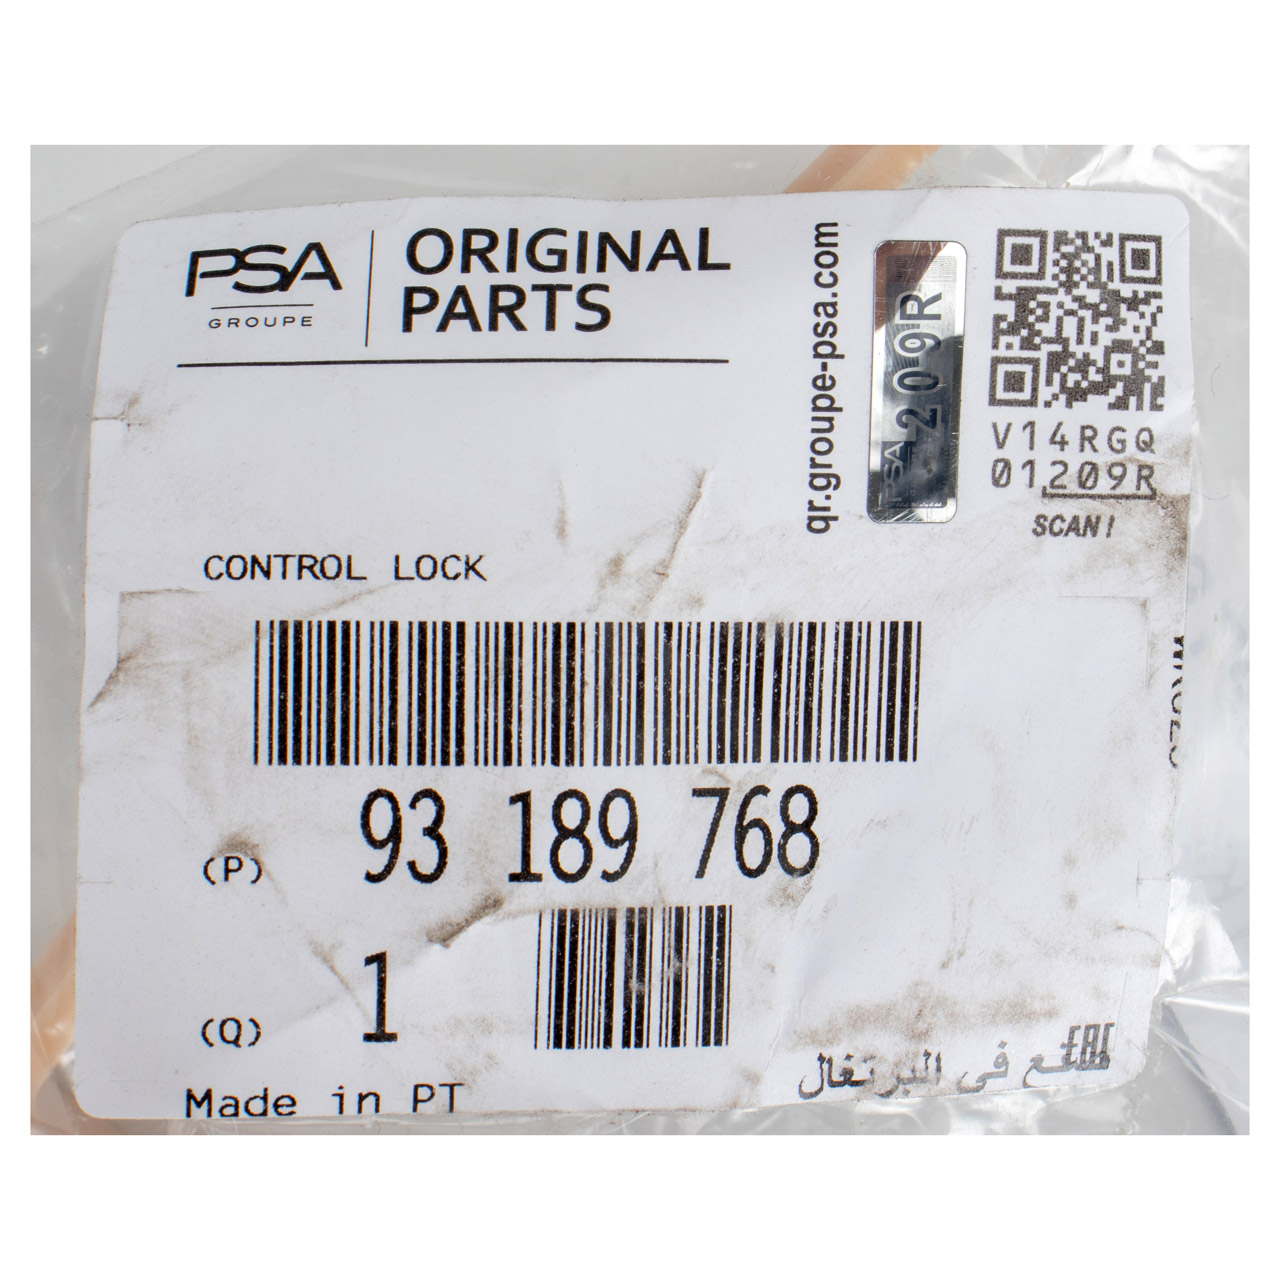 ORIGINAL PSA Opel Schalthebel Schaltgetriebe Adam M13 Corsa D E 93189768